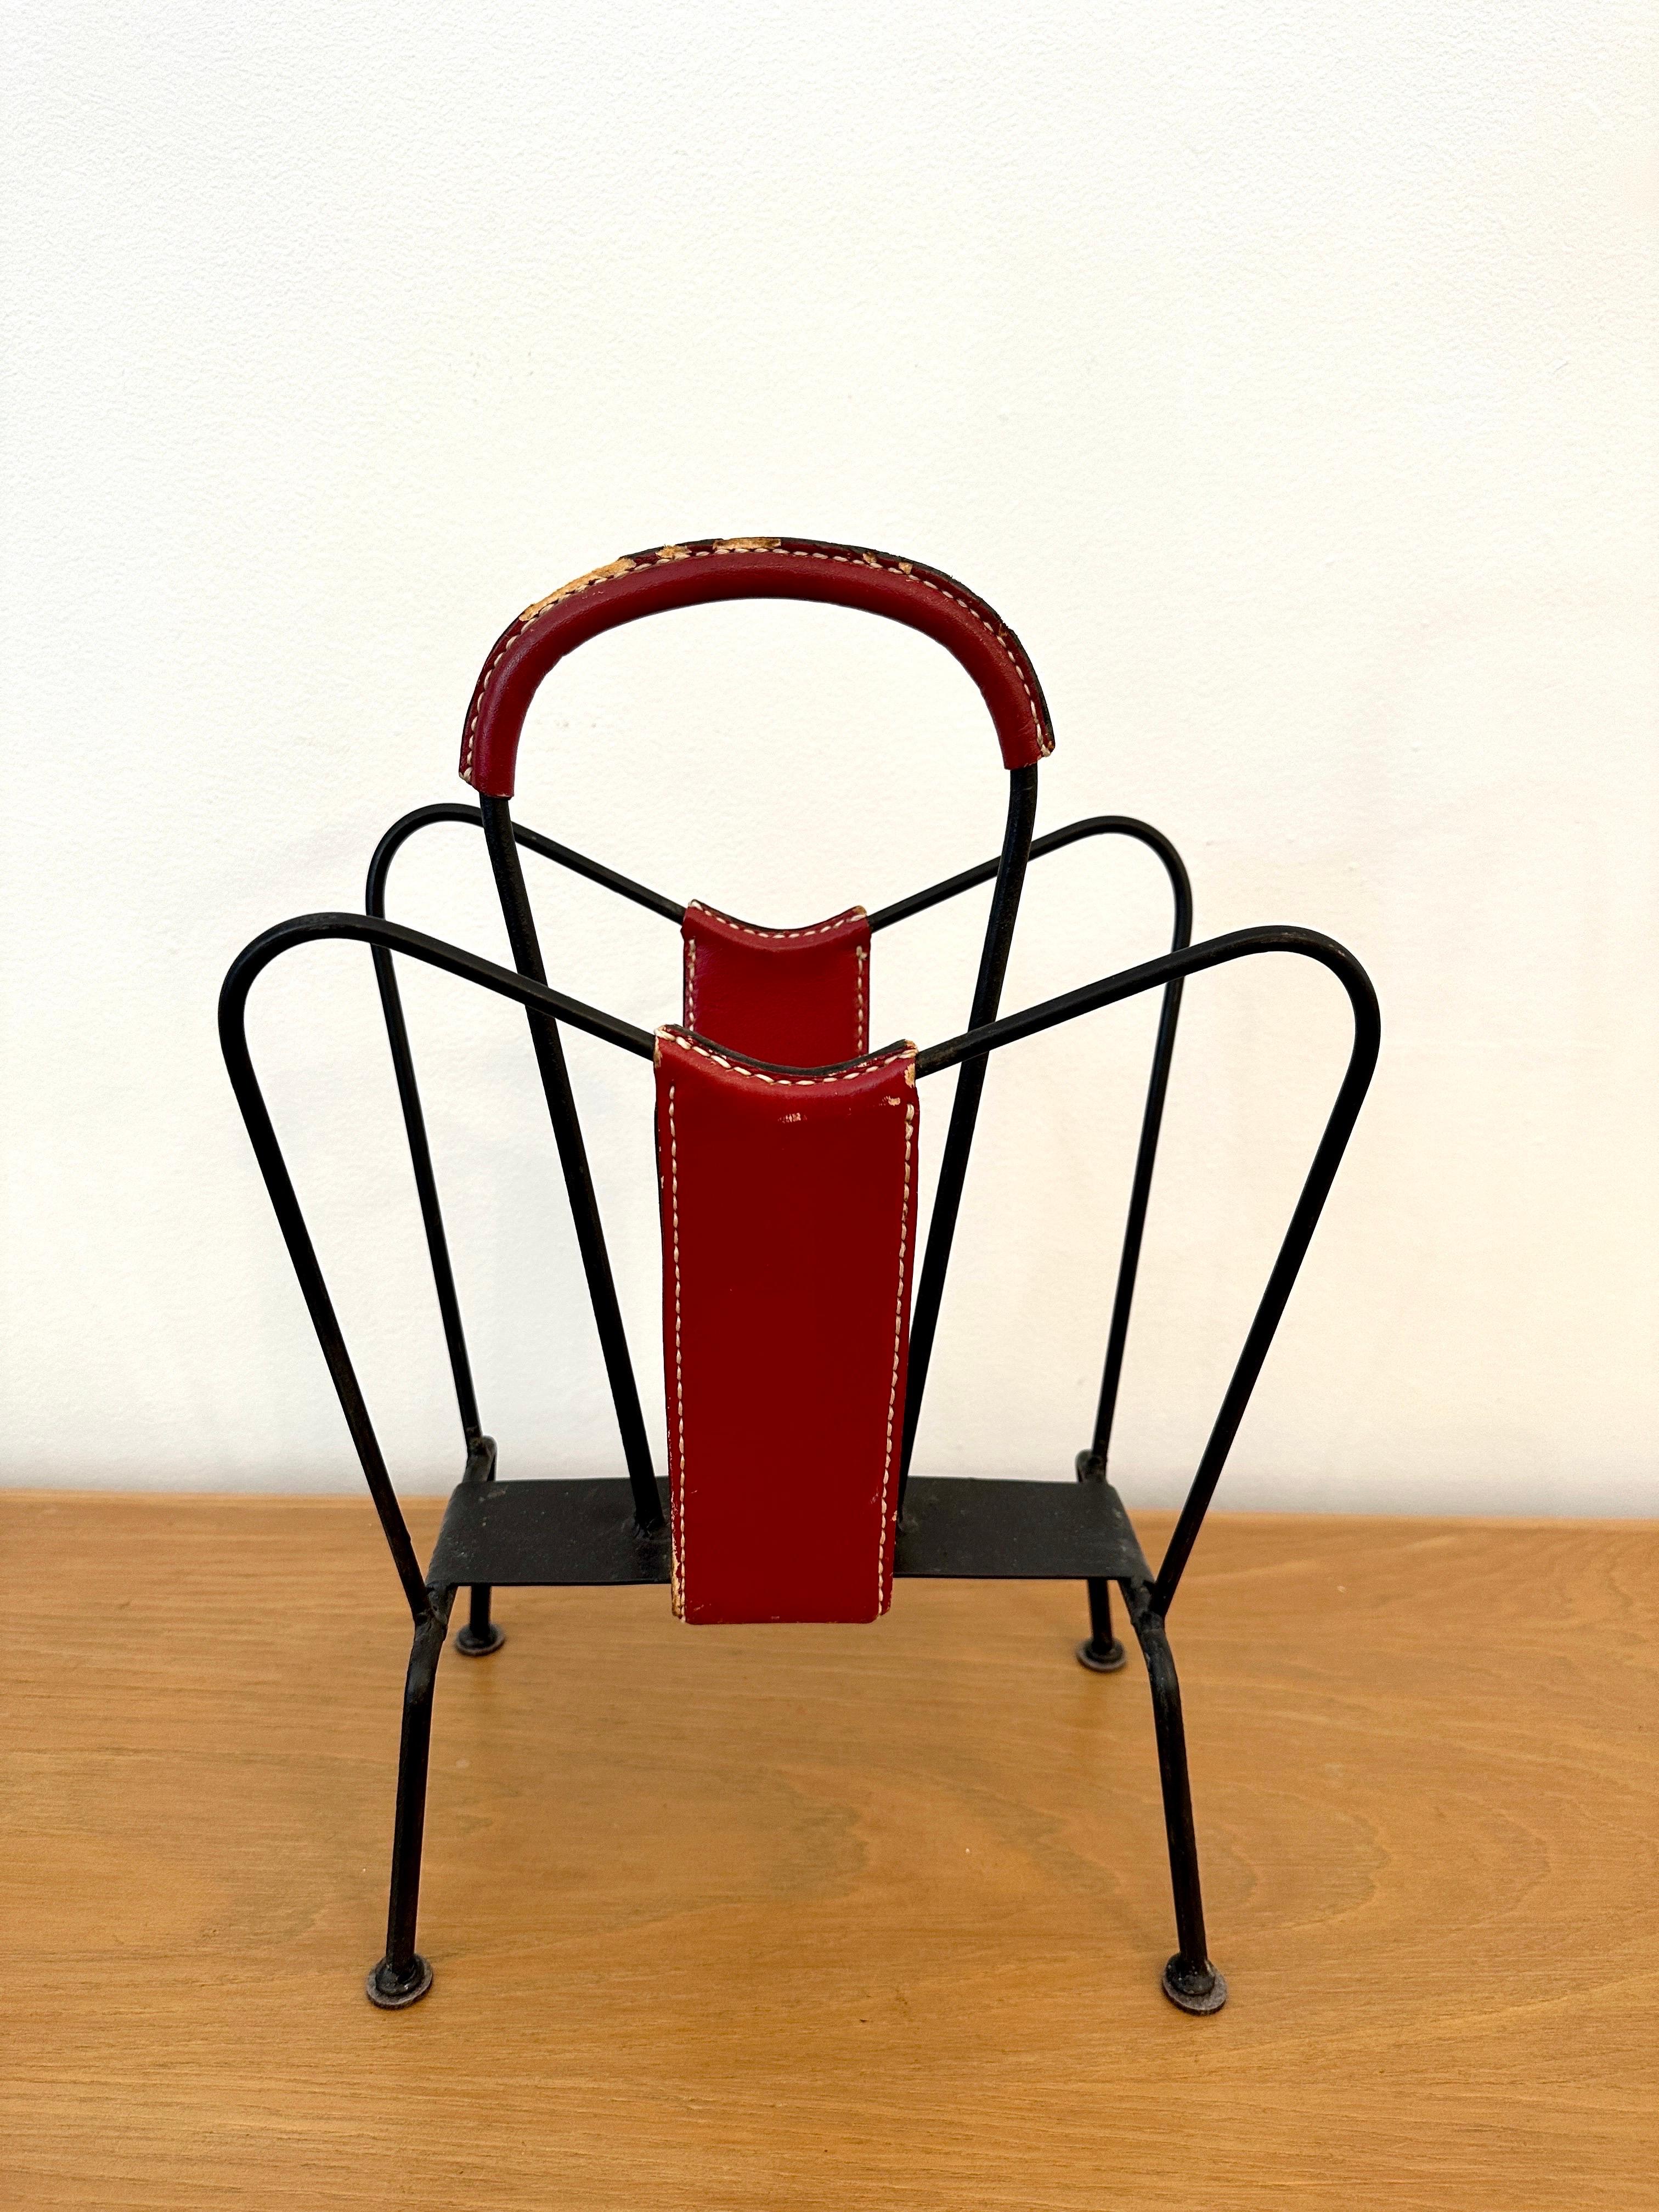 Zeitschriftenständer, entworfen von Jacques Adnet und hergestellt in seinem eigenen Atelier, Frankreich, 1950. Der Zeitschriftenständer hat einen soliden Rahmen und ist mit handgenähtem rotem Leder verziert. Der Ständer hat eine schöne Patina aus